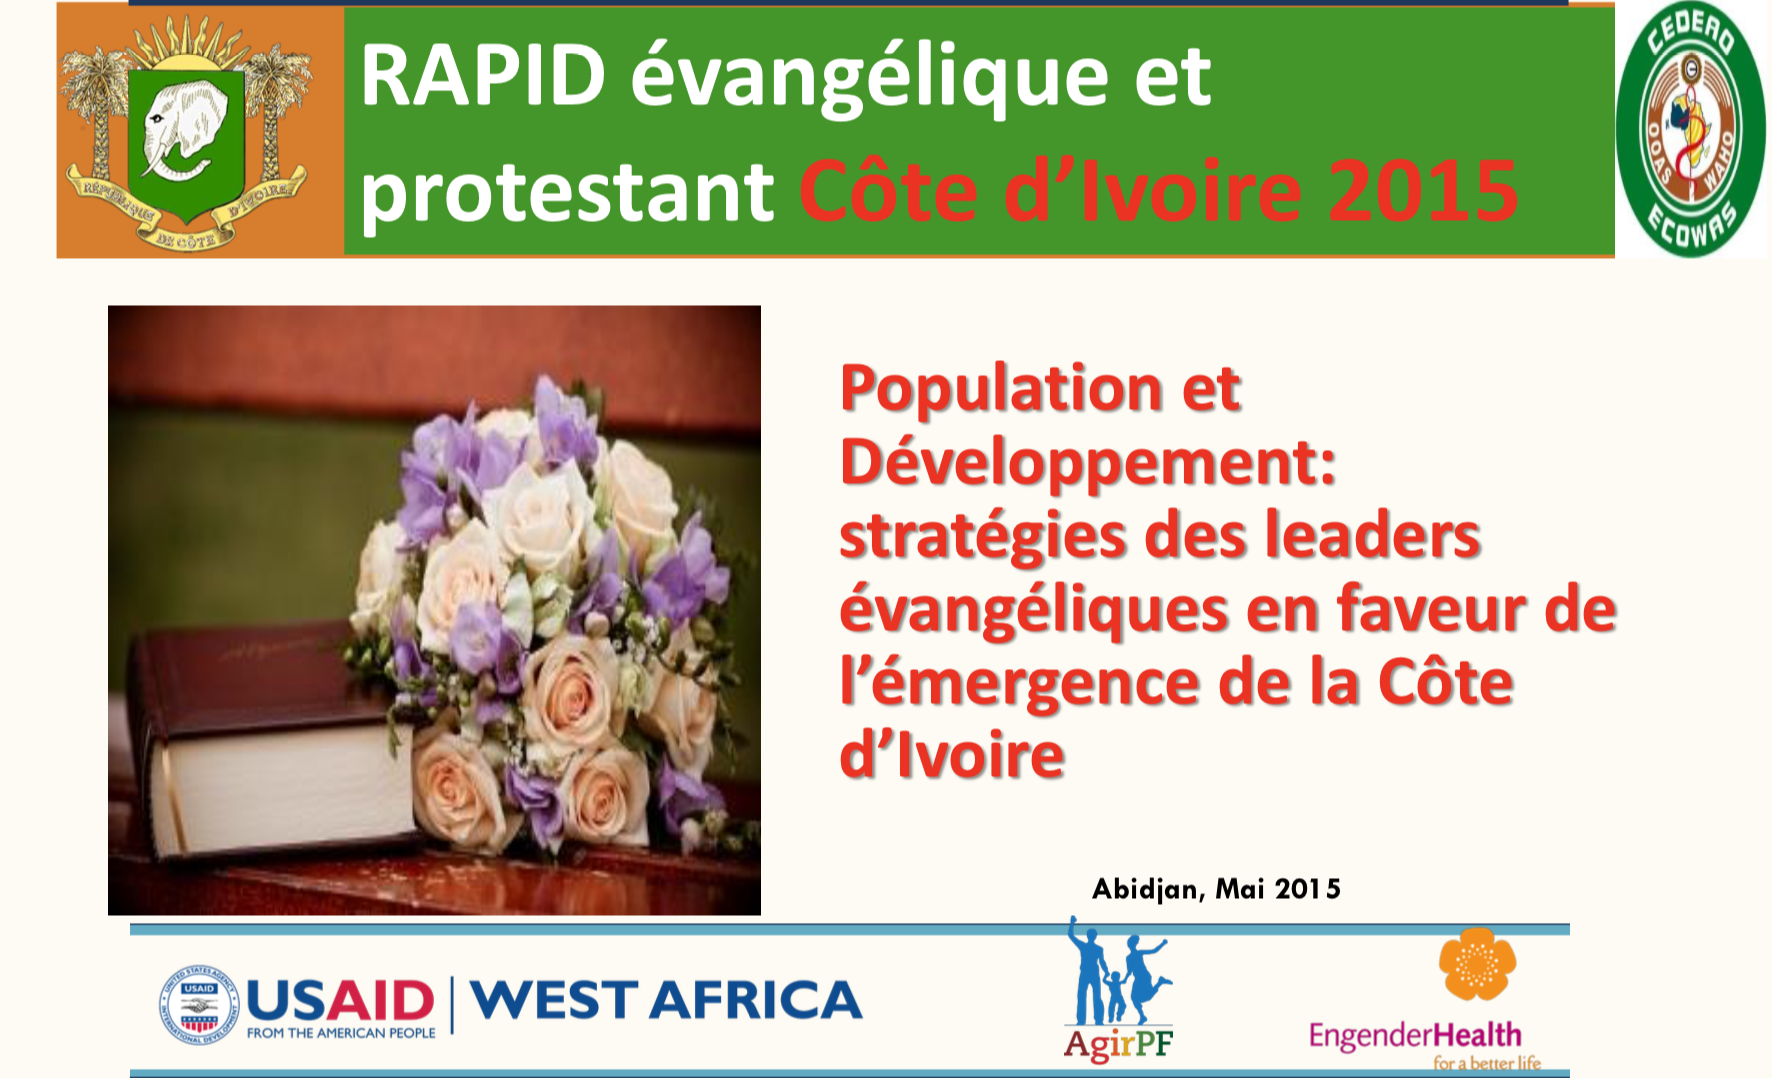 Stratégies des leaders évangéliques en faveur de l’emergence de la Côte d’Ivoire